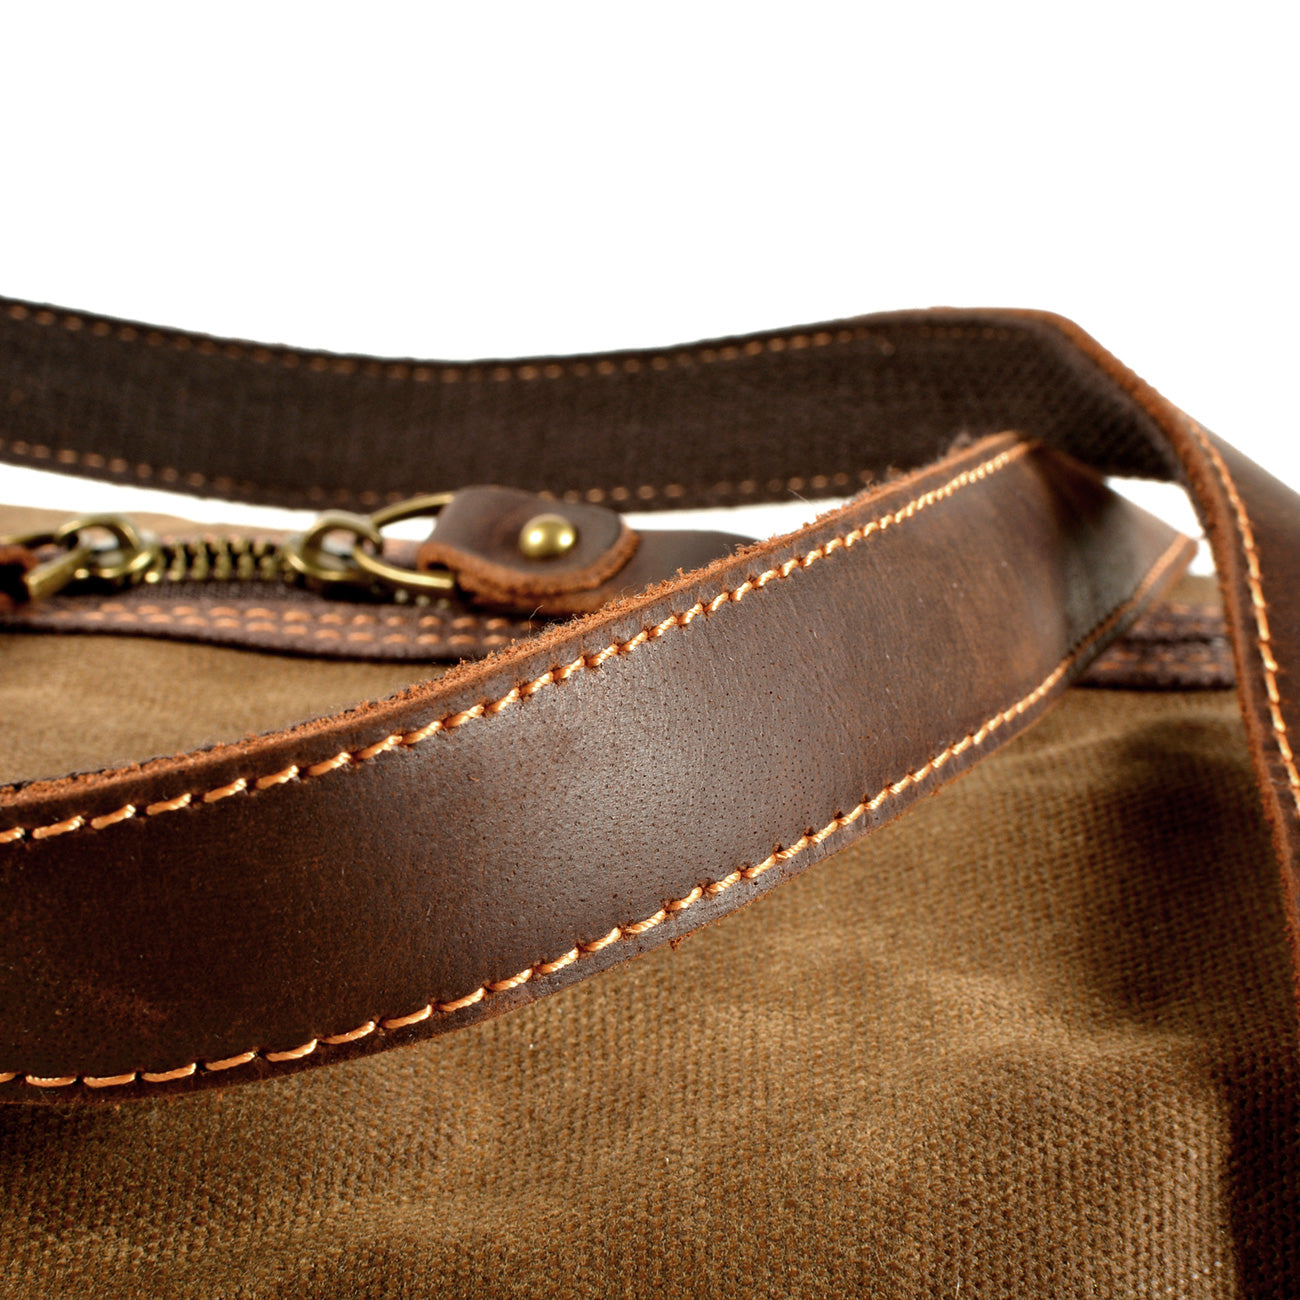 Militär-Duffel-Tasche | BEAUVAL - - Bags - Concept Frankfurt